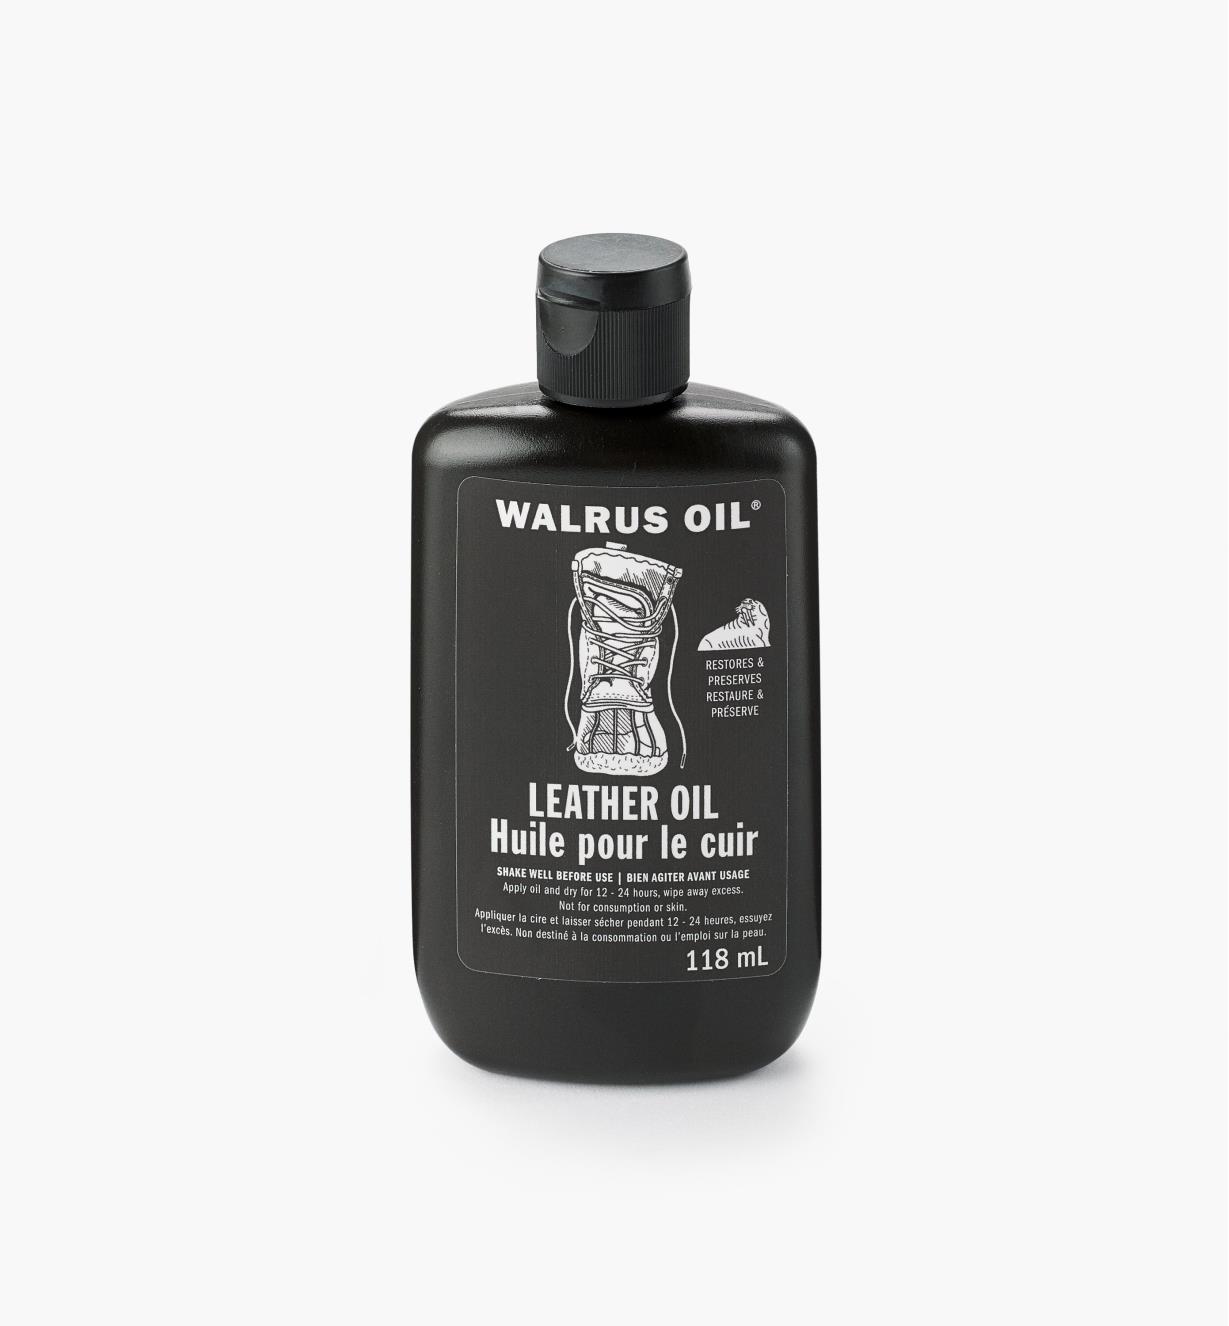 27K2930 - Walrus Oil Leather Oil, 4 oz (118ml)